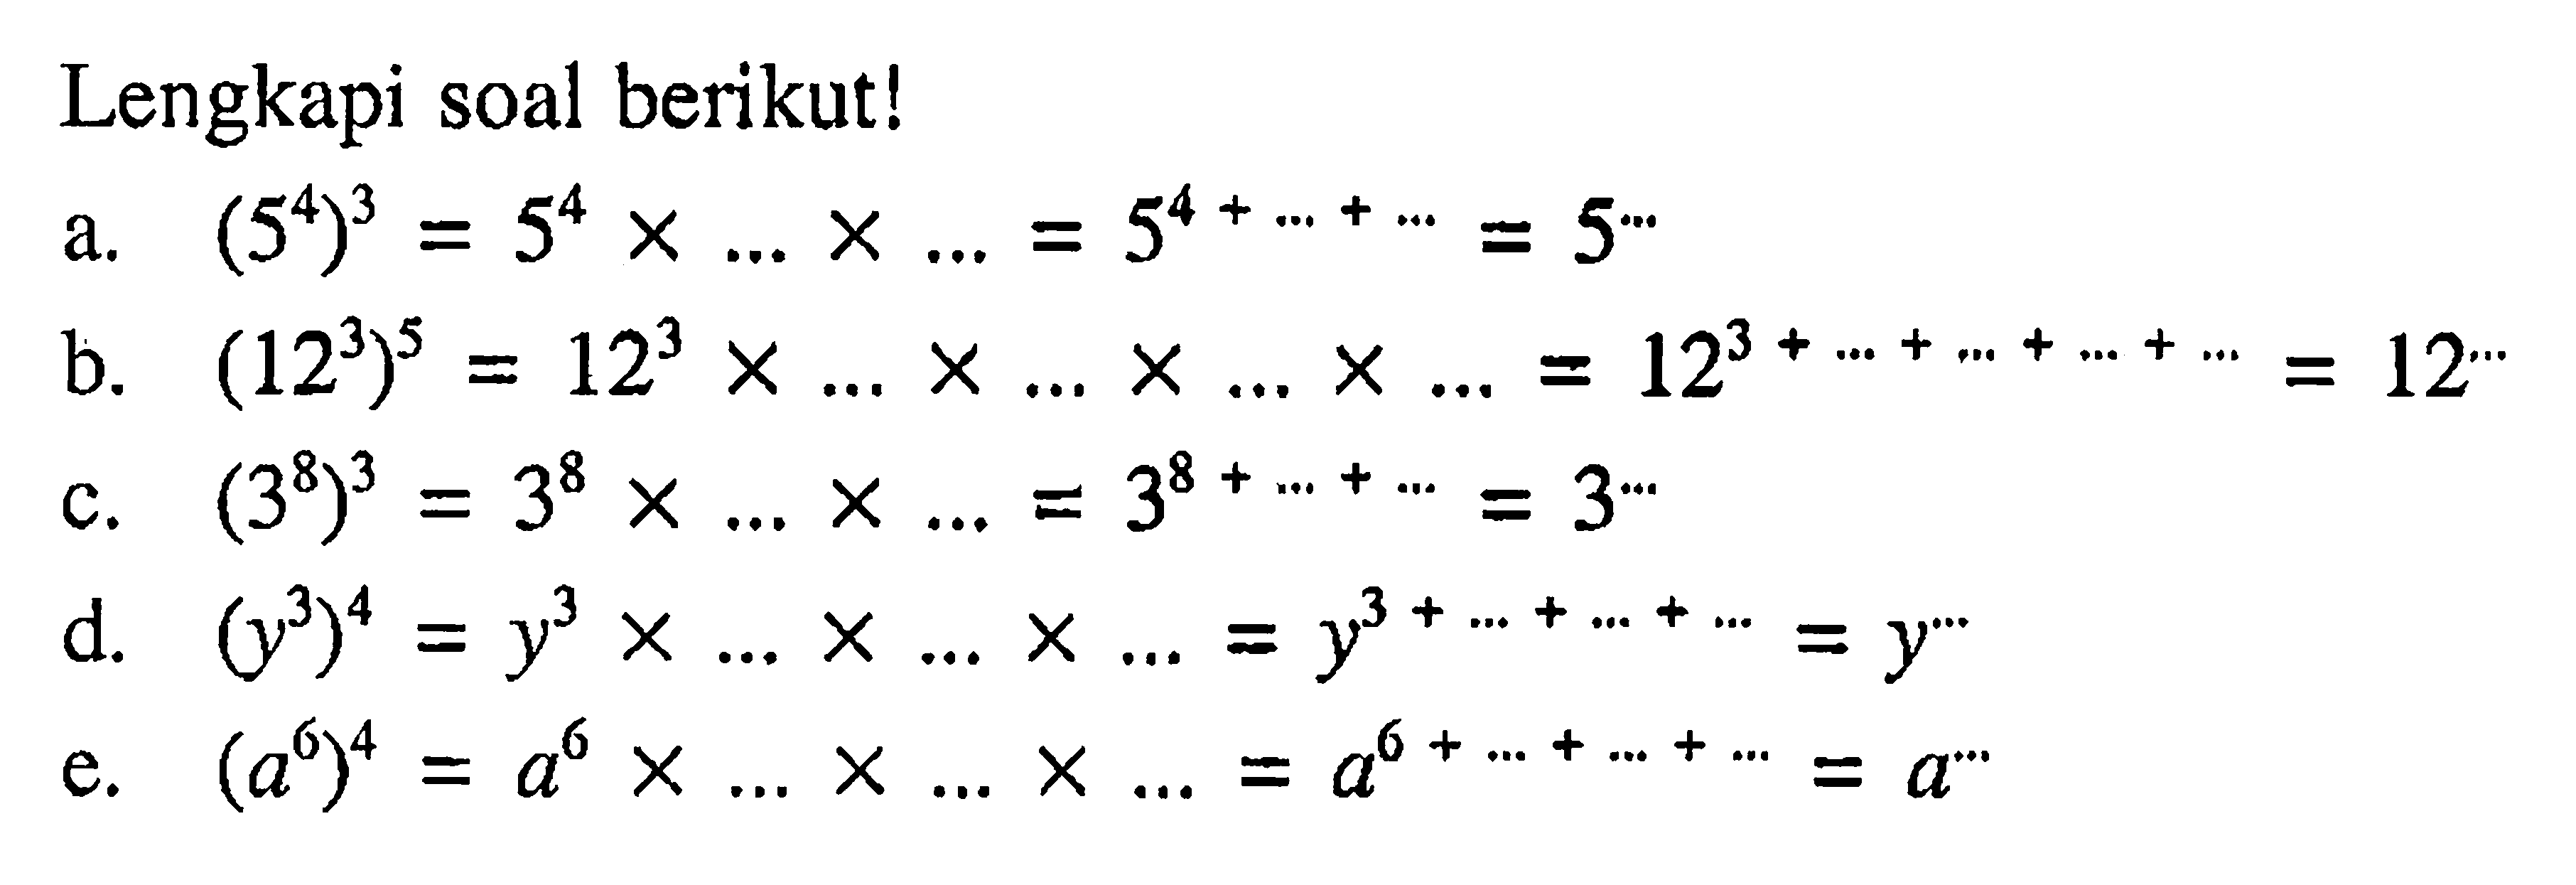 Lengkapi soal berikut! a. (5^4)^3 = 5^4 x ... x.... = 5^(4 + ....+ ....) = 5^...  b. (12^3)^5 = 12^3 x ..... x.... x ..... x .... = 12^(13 + .... + .... + .... + ..... = 12^.... c. (3^8)^3 = 3^8 x .... x ... = 3^(8 +... + ... = 3^... d. (y^3)^4 = y^3 x .... x ... x ... = y^(3 + ... + ... + ... = y^... e. (a^6)^4 = a^6 x ... x ... x .... = a^(6 +... + .... + ...) = a^ ...